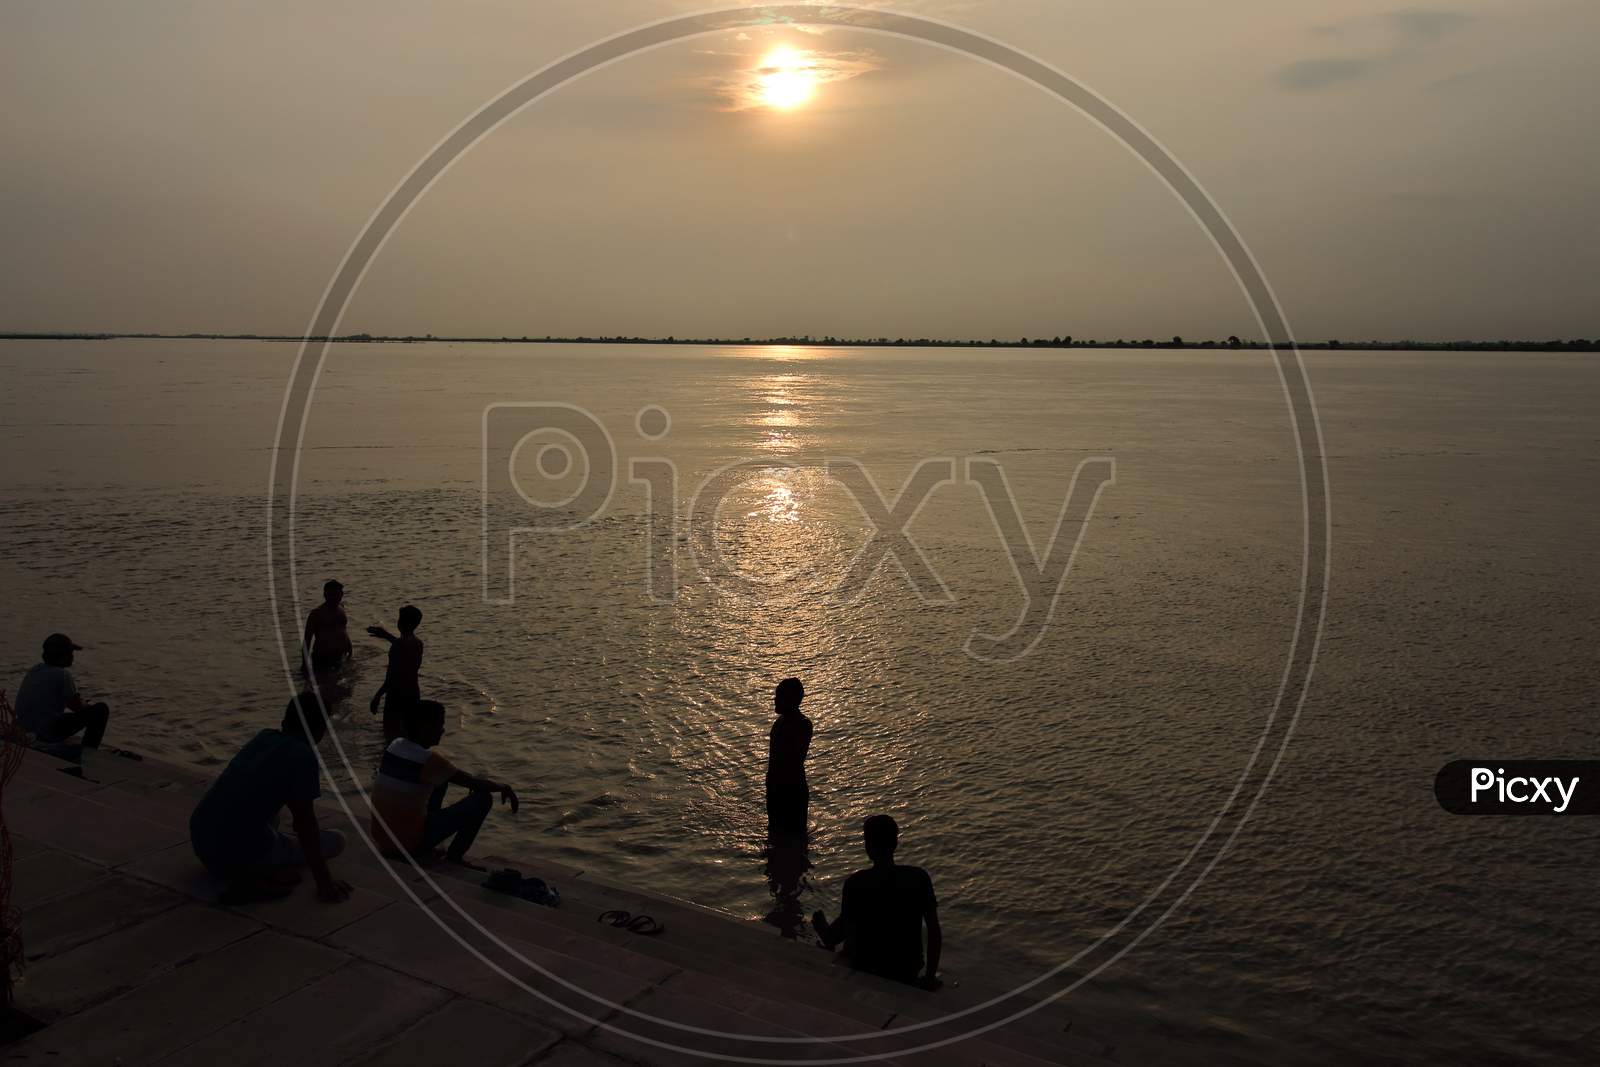 guptar ghat sunset view ayodhya faizabad uttar pradesh india